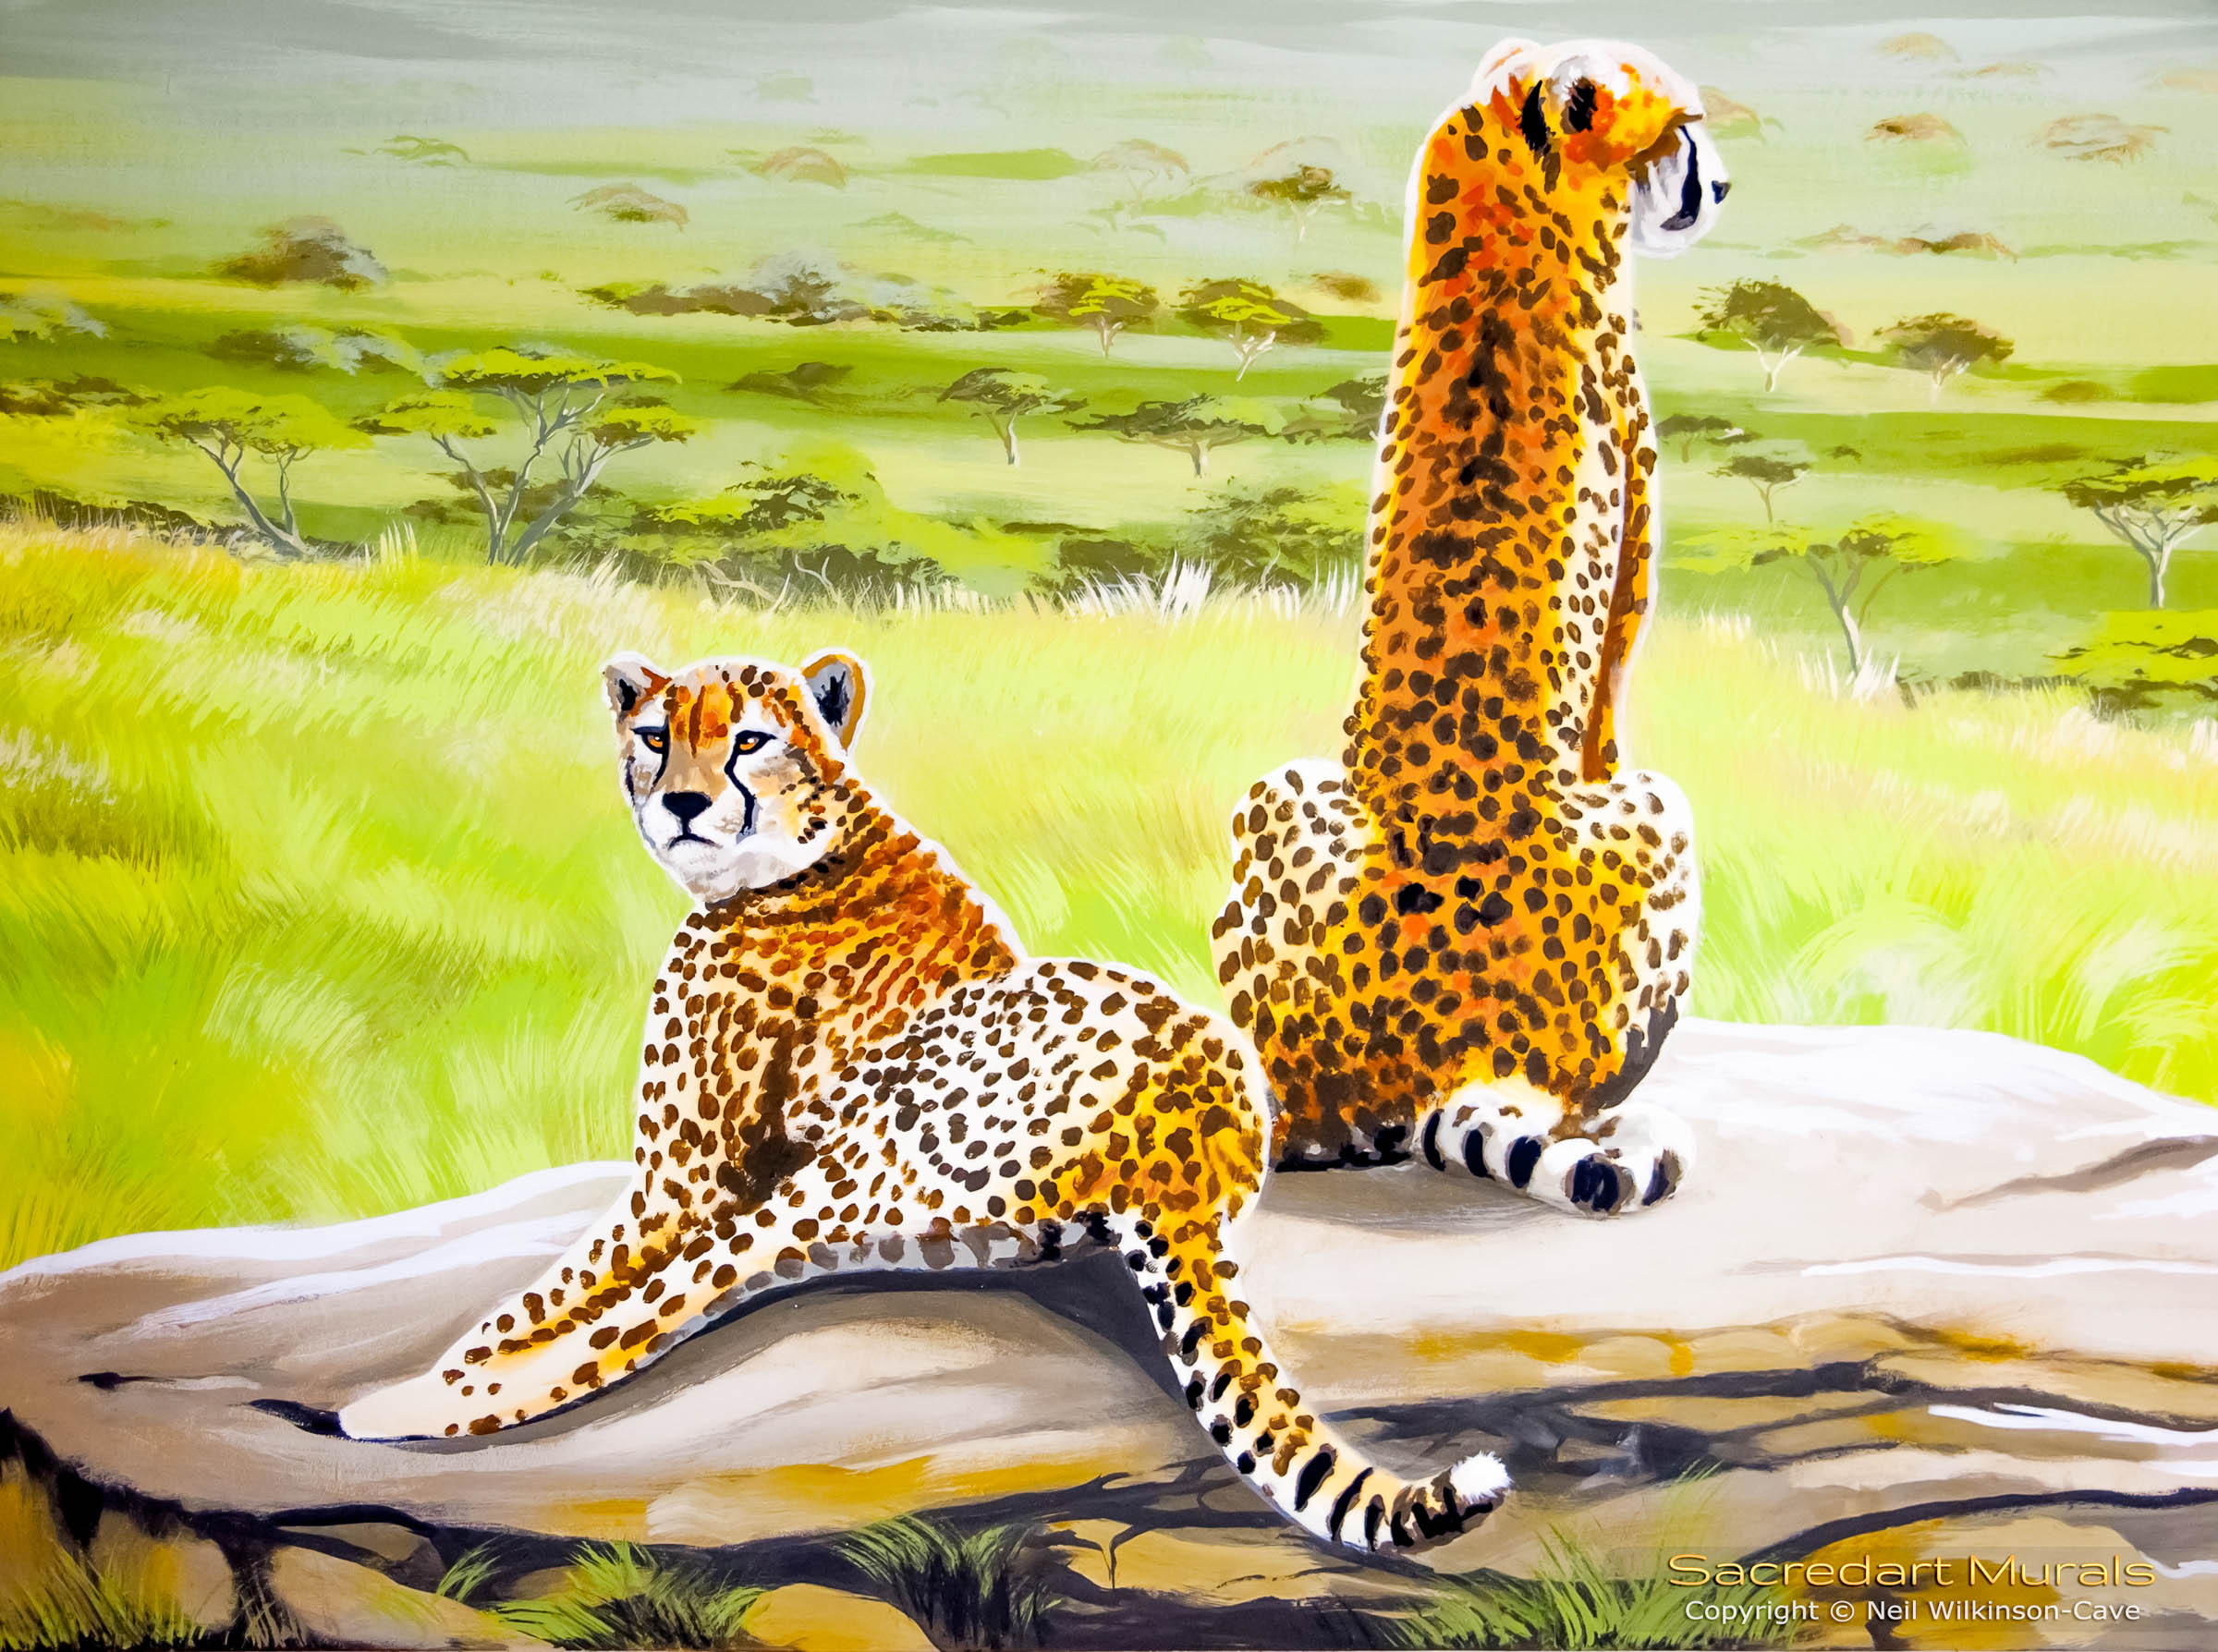 Cheetahs on a rock mural